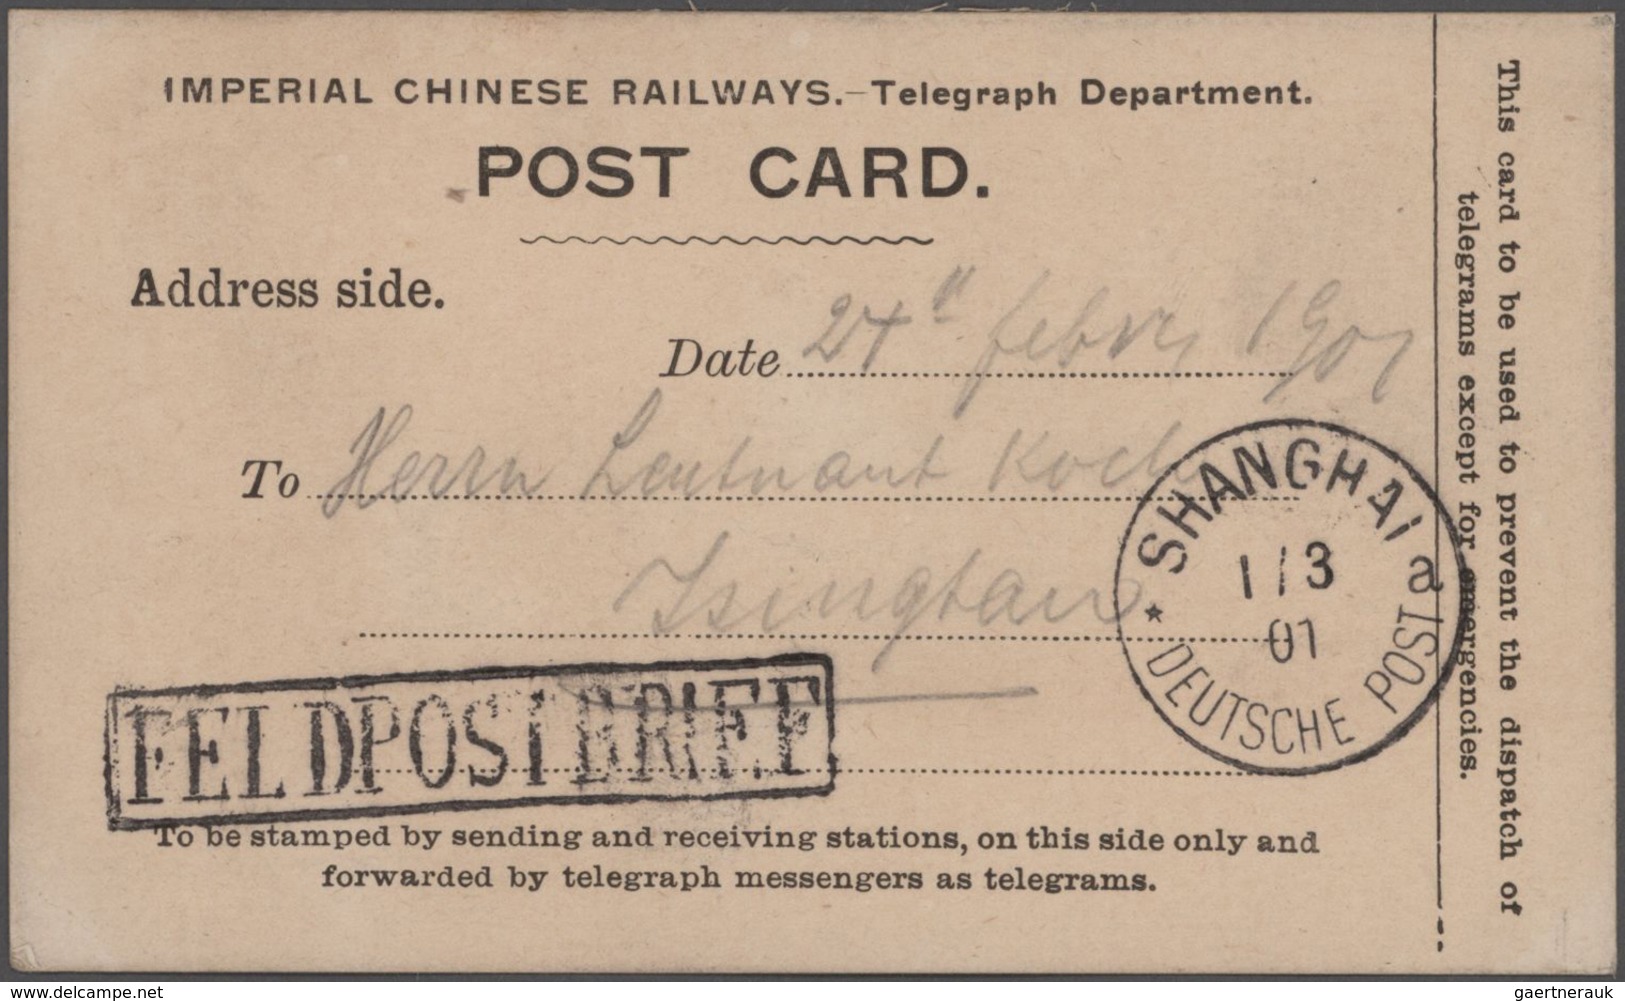 Deutsche Post in China: 1890/1909, umfangreicher Sammlungsbestand "Dt. Post in China und Kiautschou"